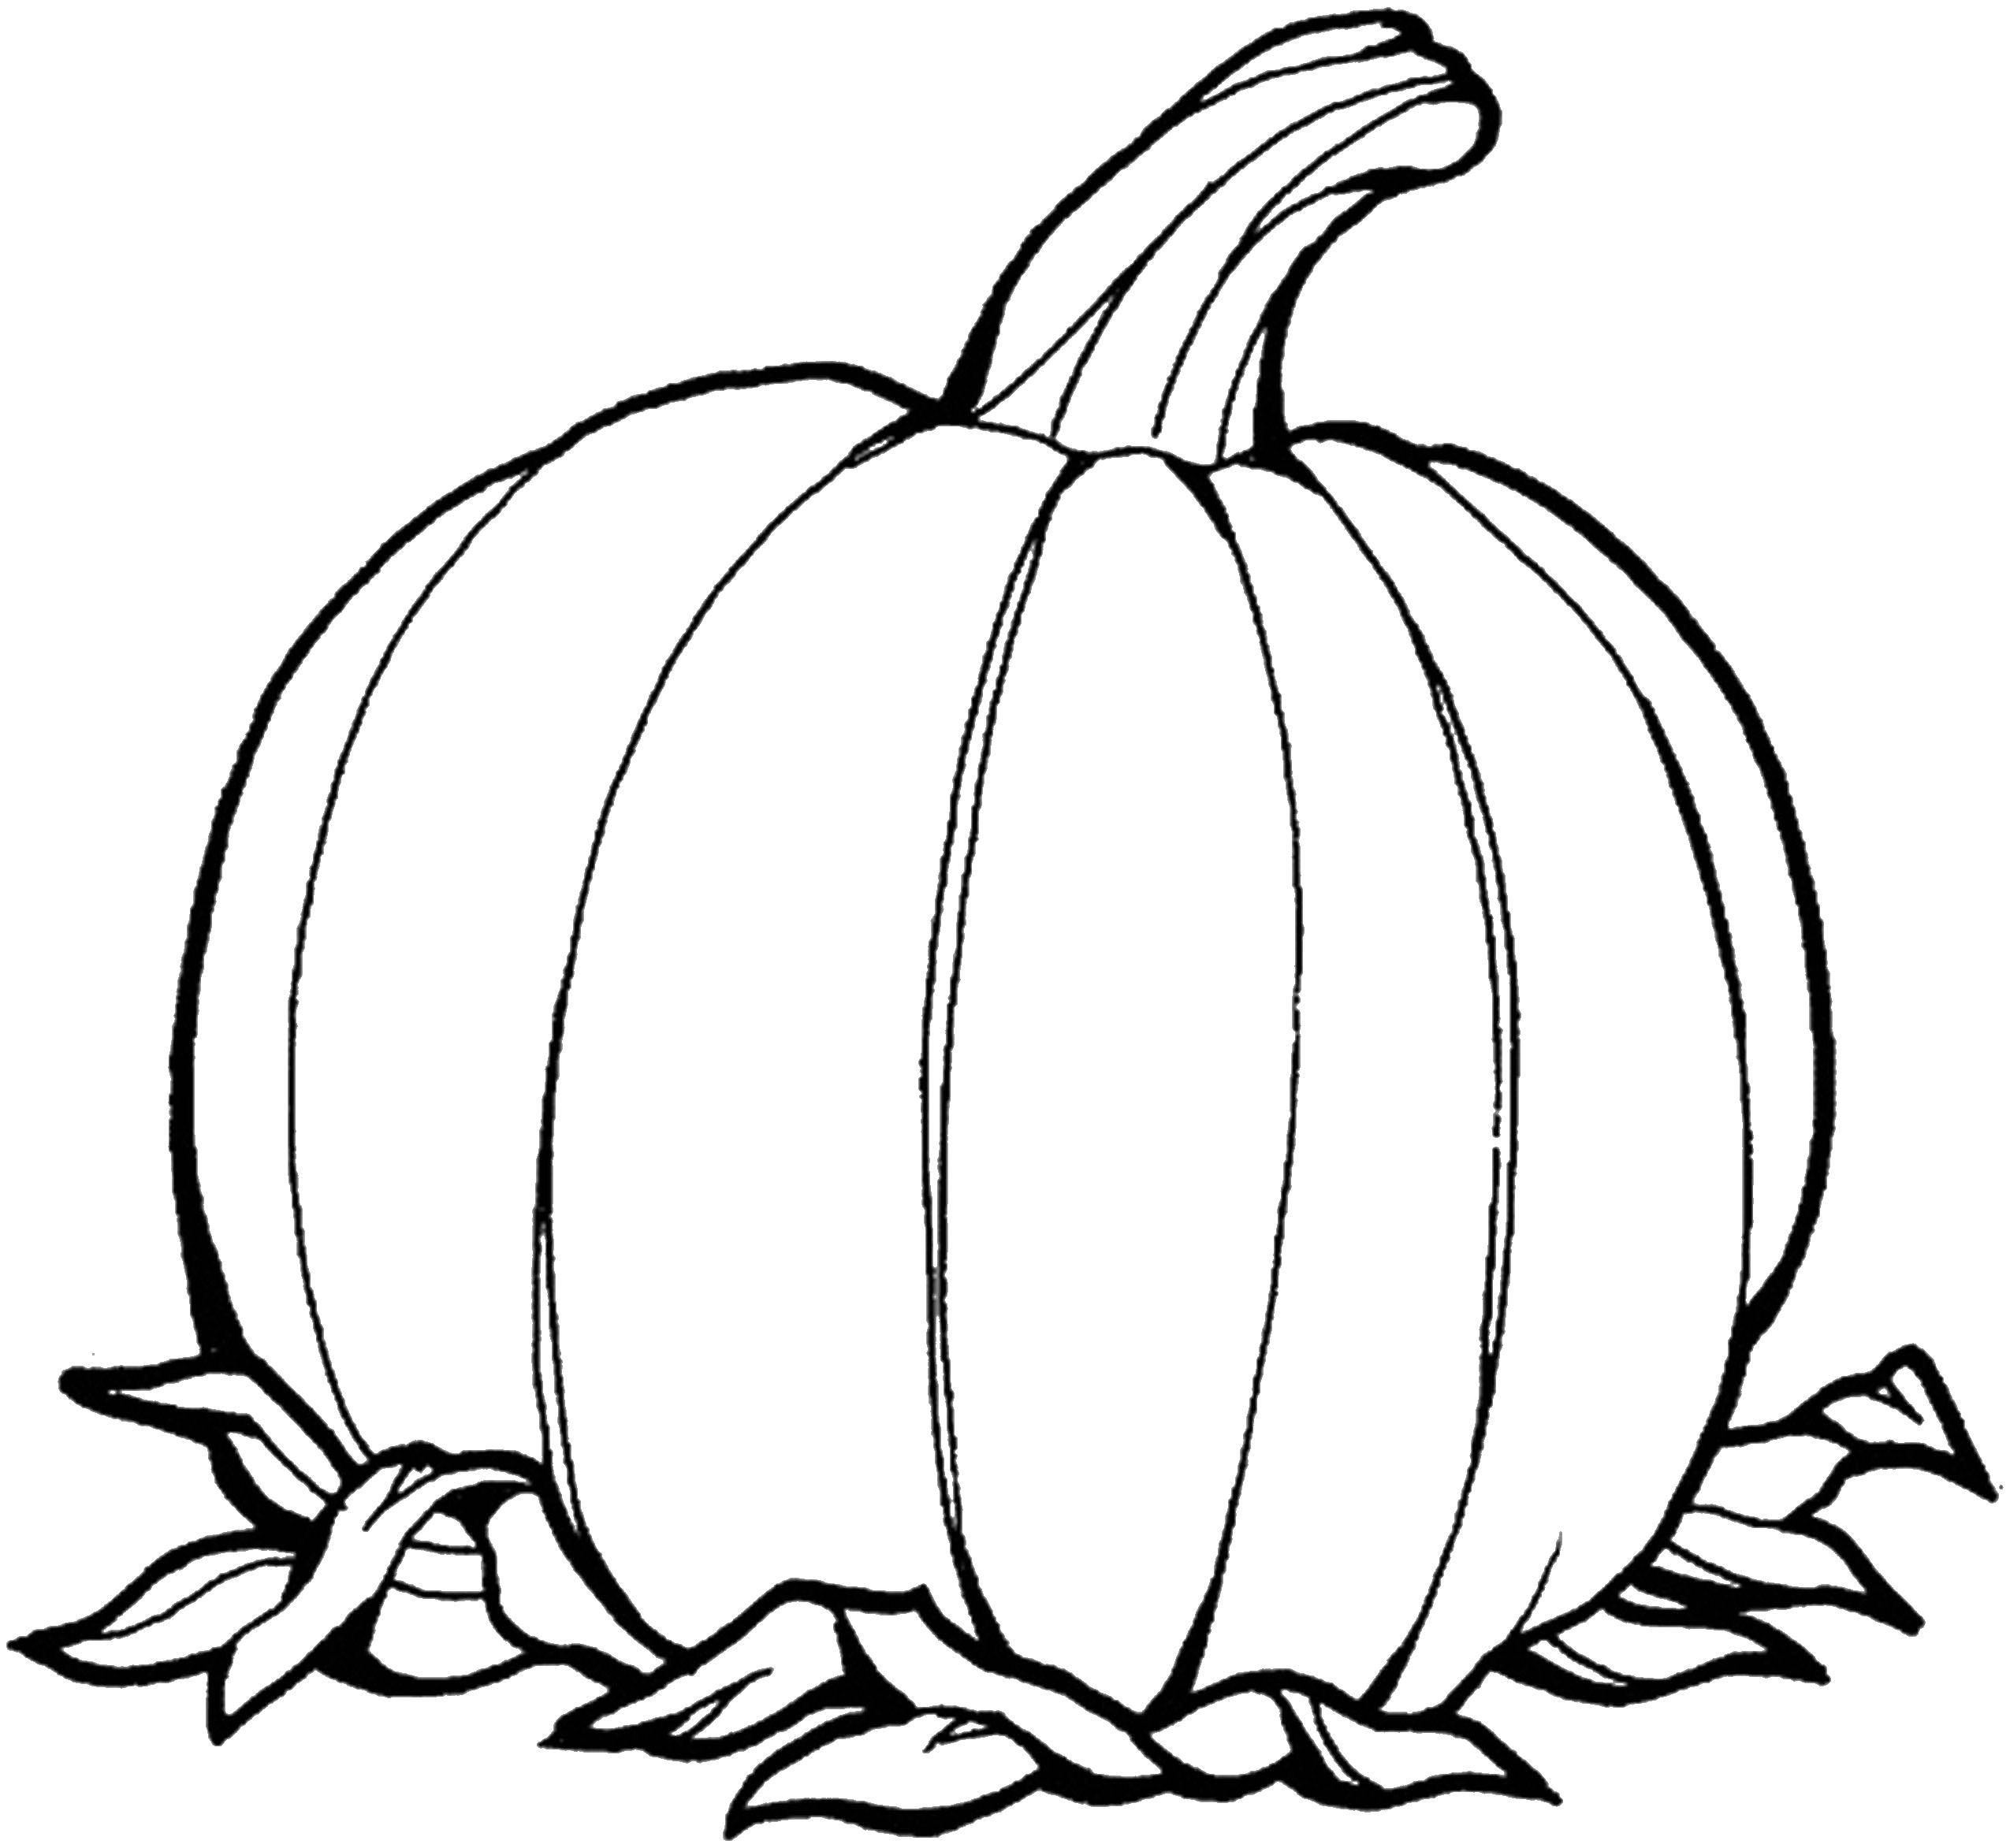 Coloring Pumpkin. Category autumn harvest. Tags:  autumn, harvest, pumpkins.